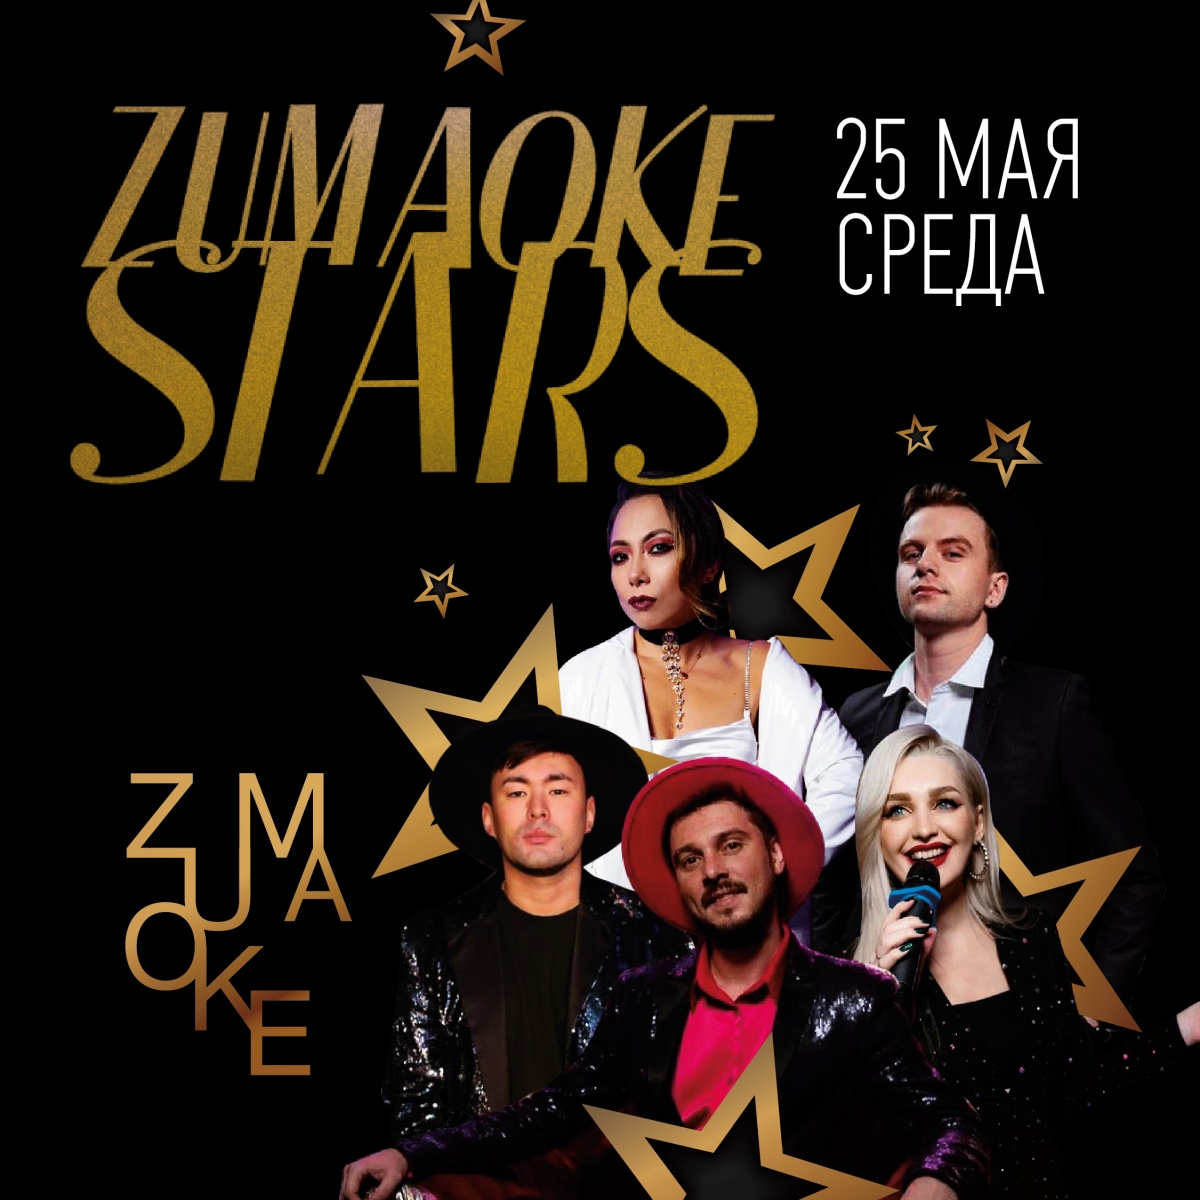   - ZUMAOKE STARS 25.05!